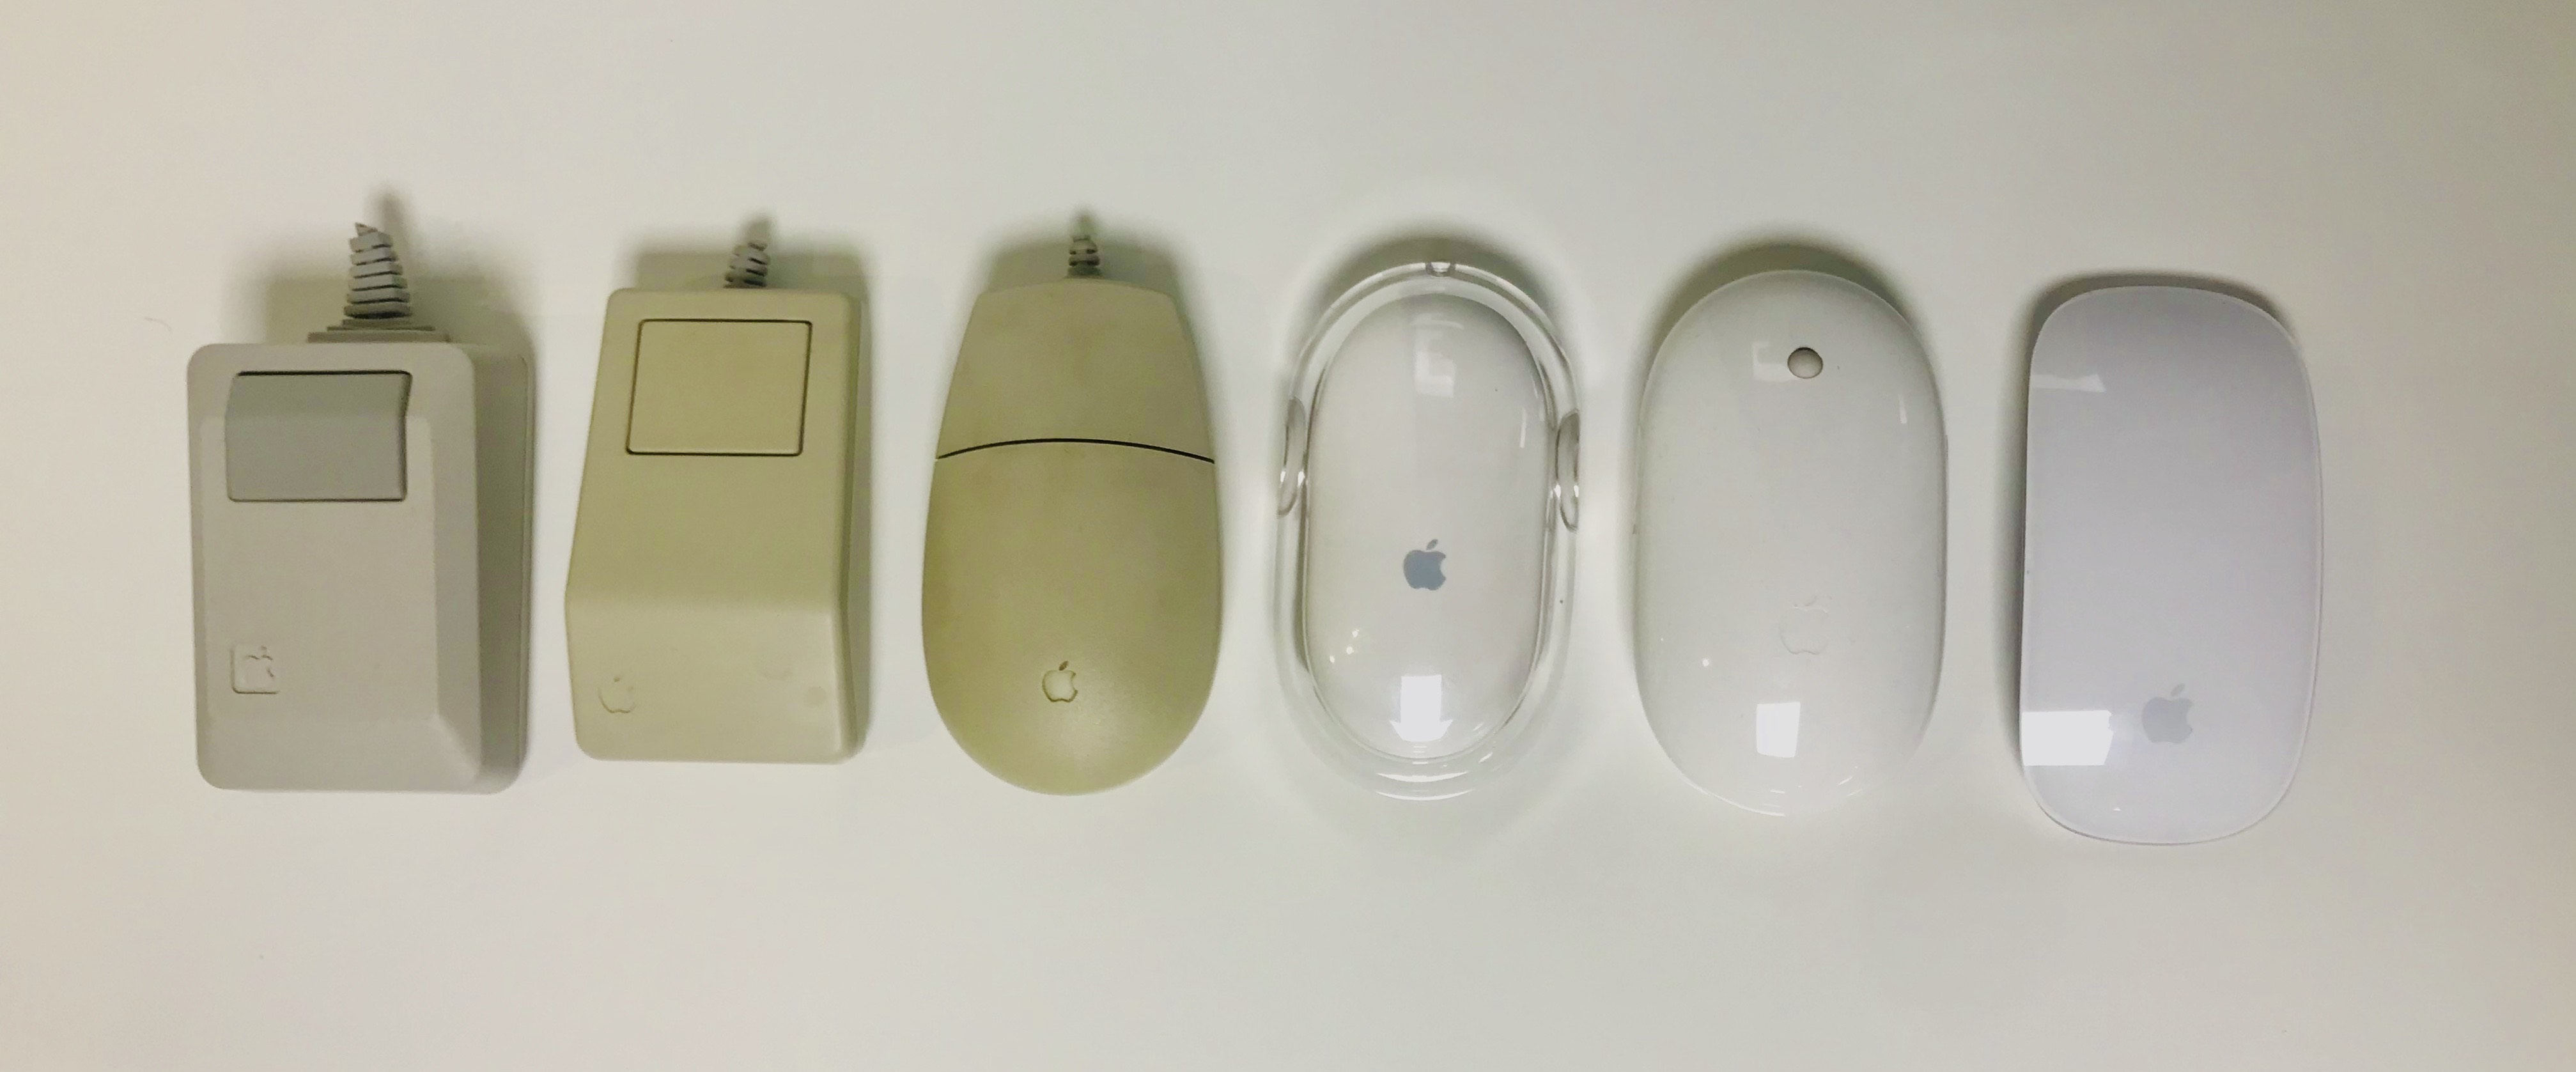 Vintage apple computer mouse